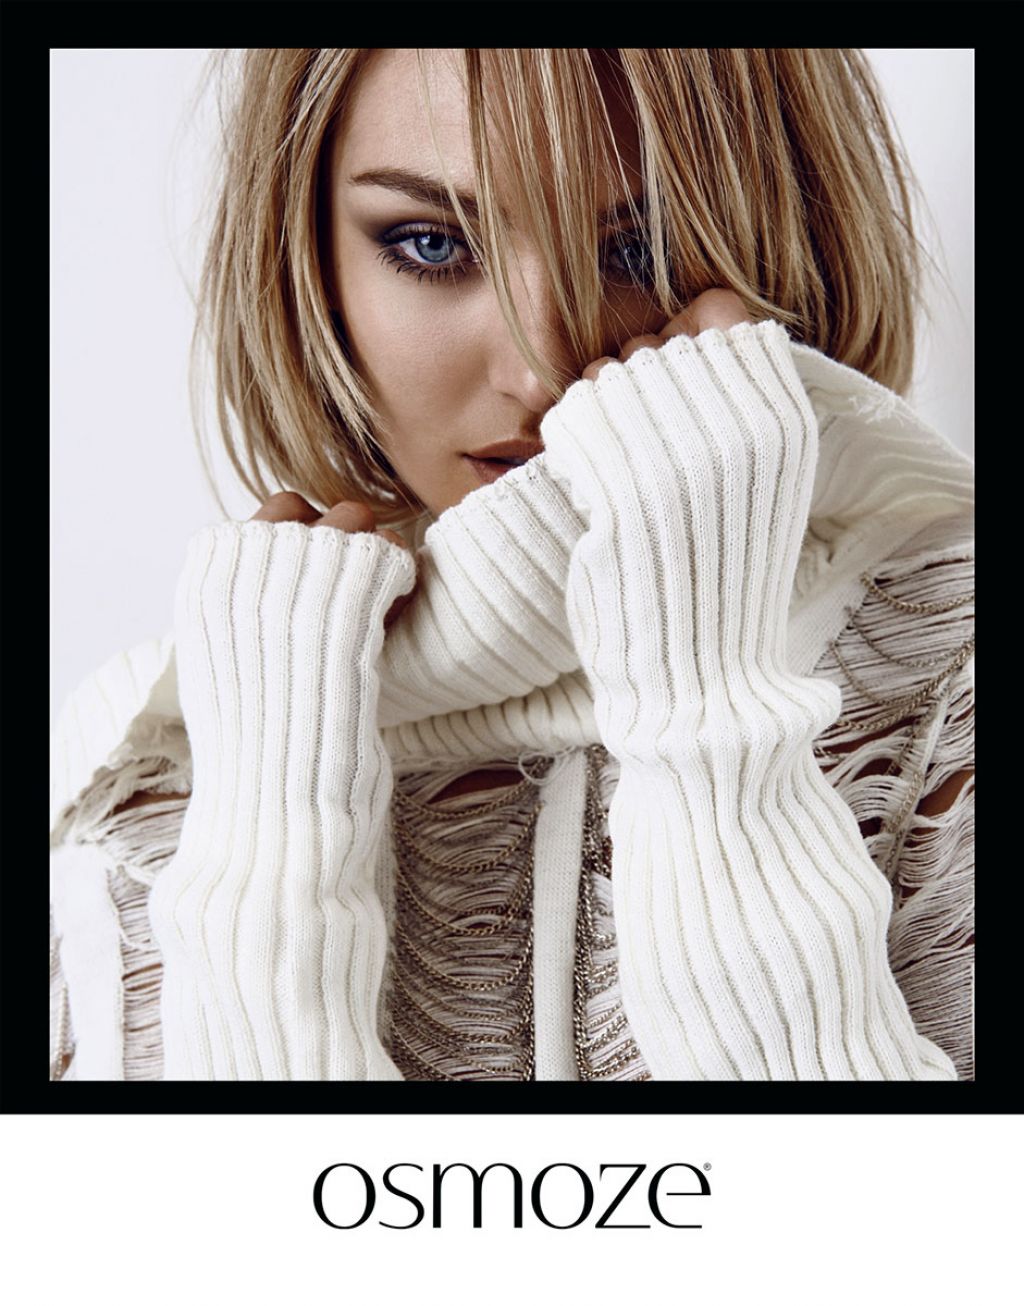 Candice Swanepoel - Photoshoot for Osmoze - Winter 2015